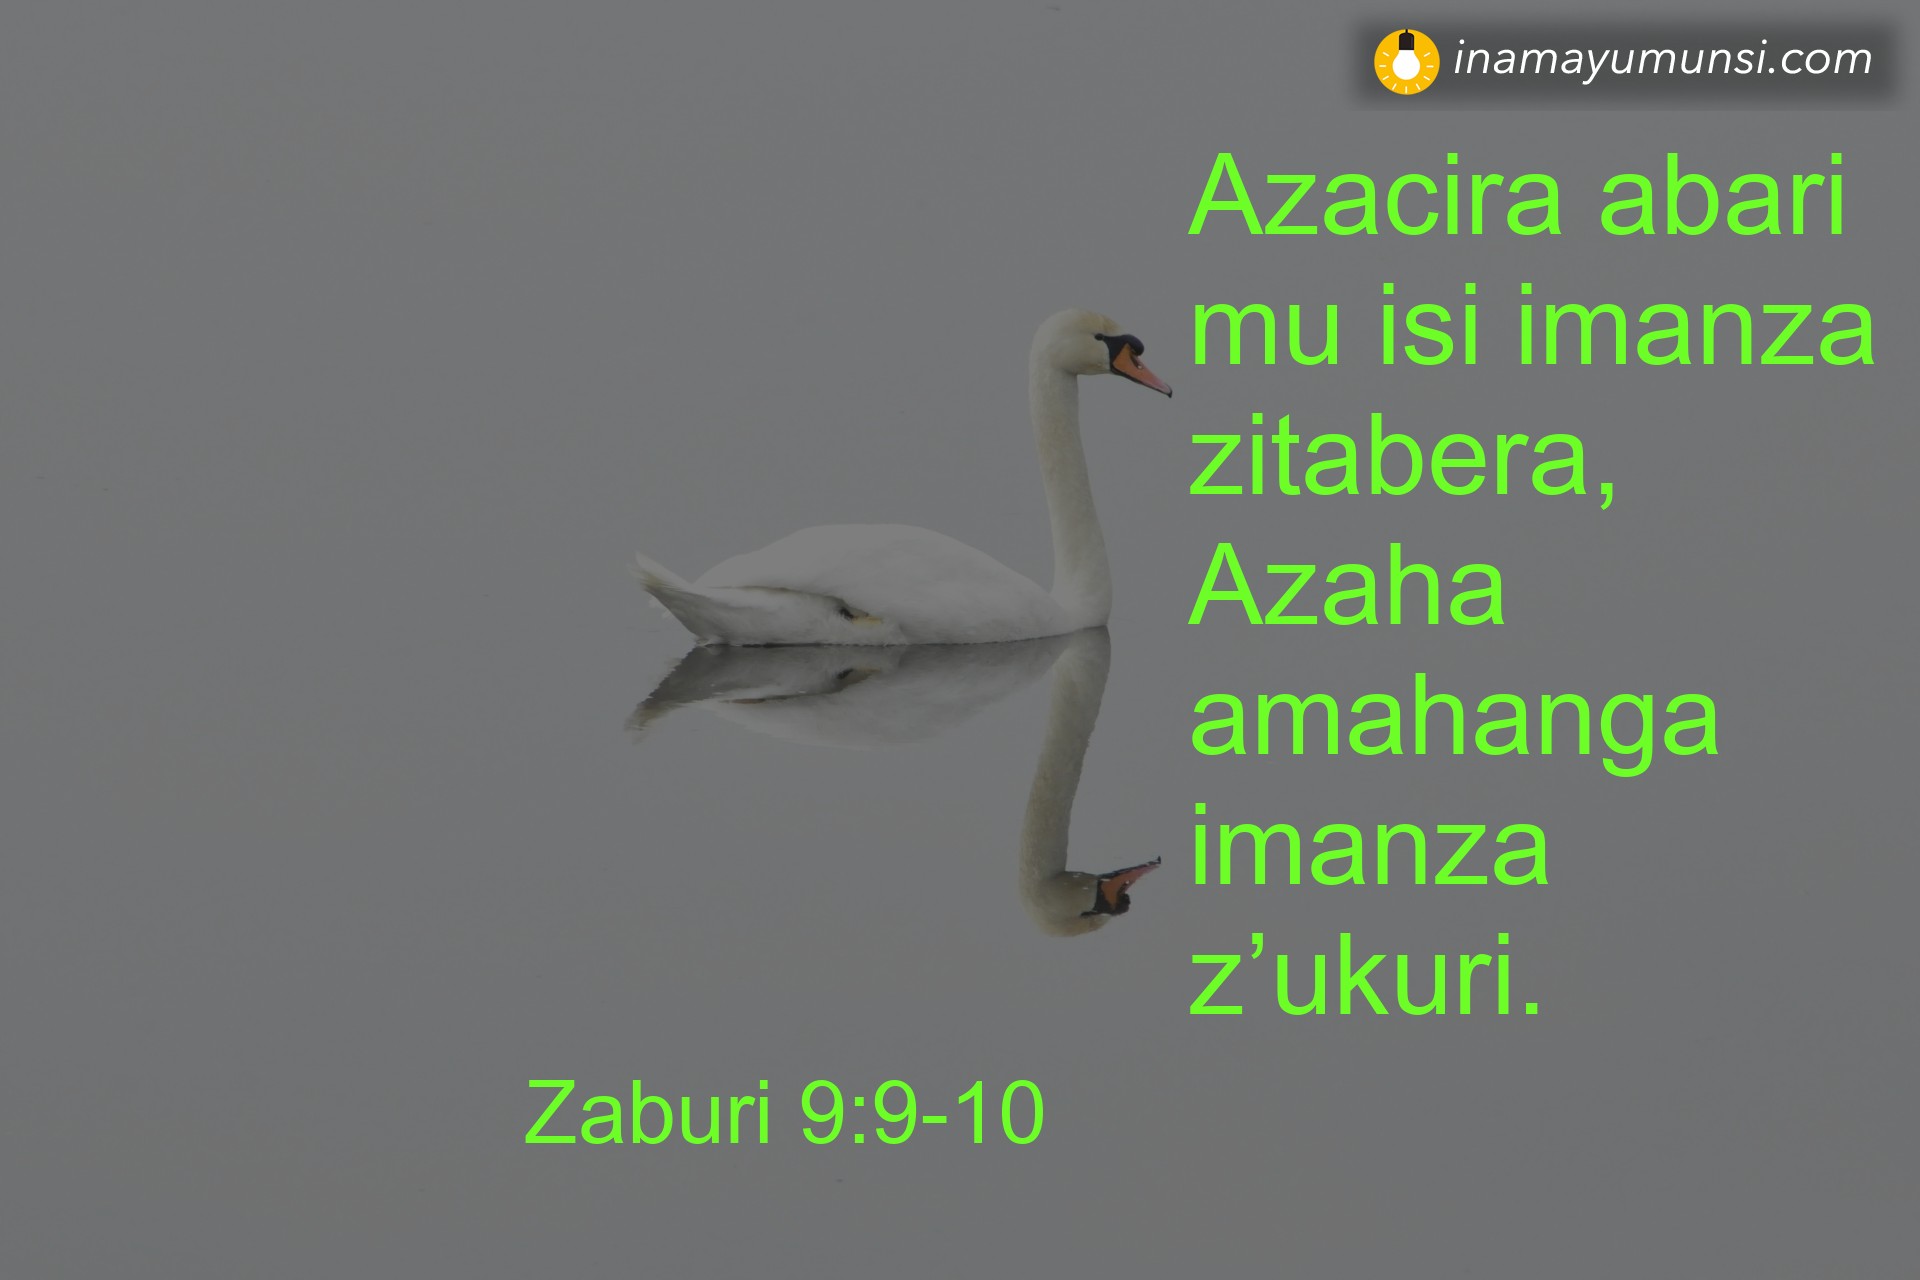 Zaburi 9:9-10 ⇒ Azacira abari mu isi imanza zitabera, Azaha amahanga imanza z’ukuri.